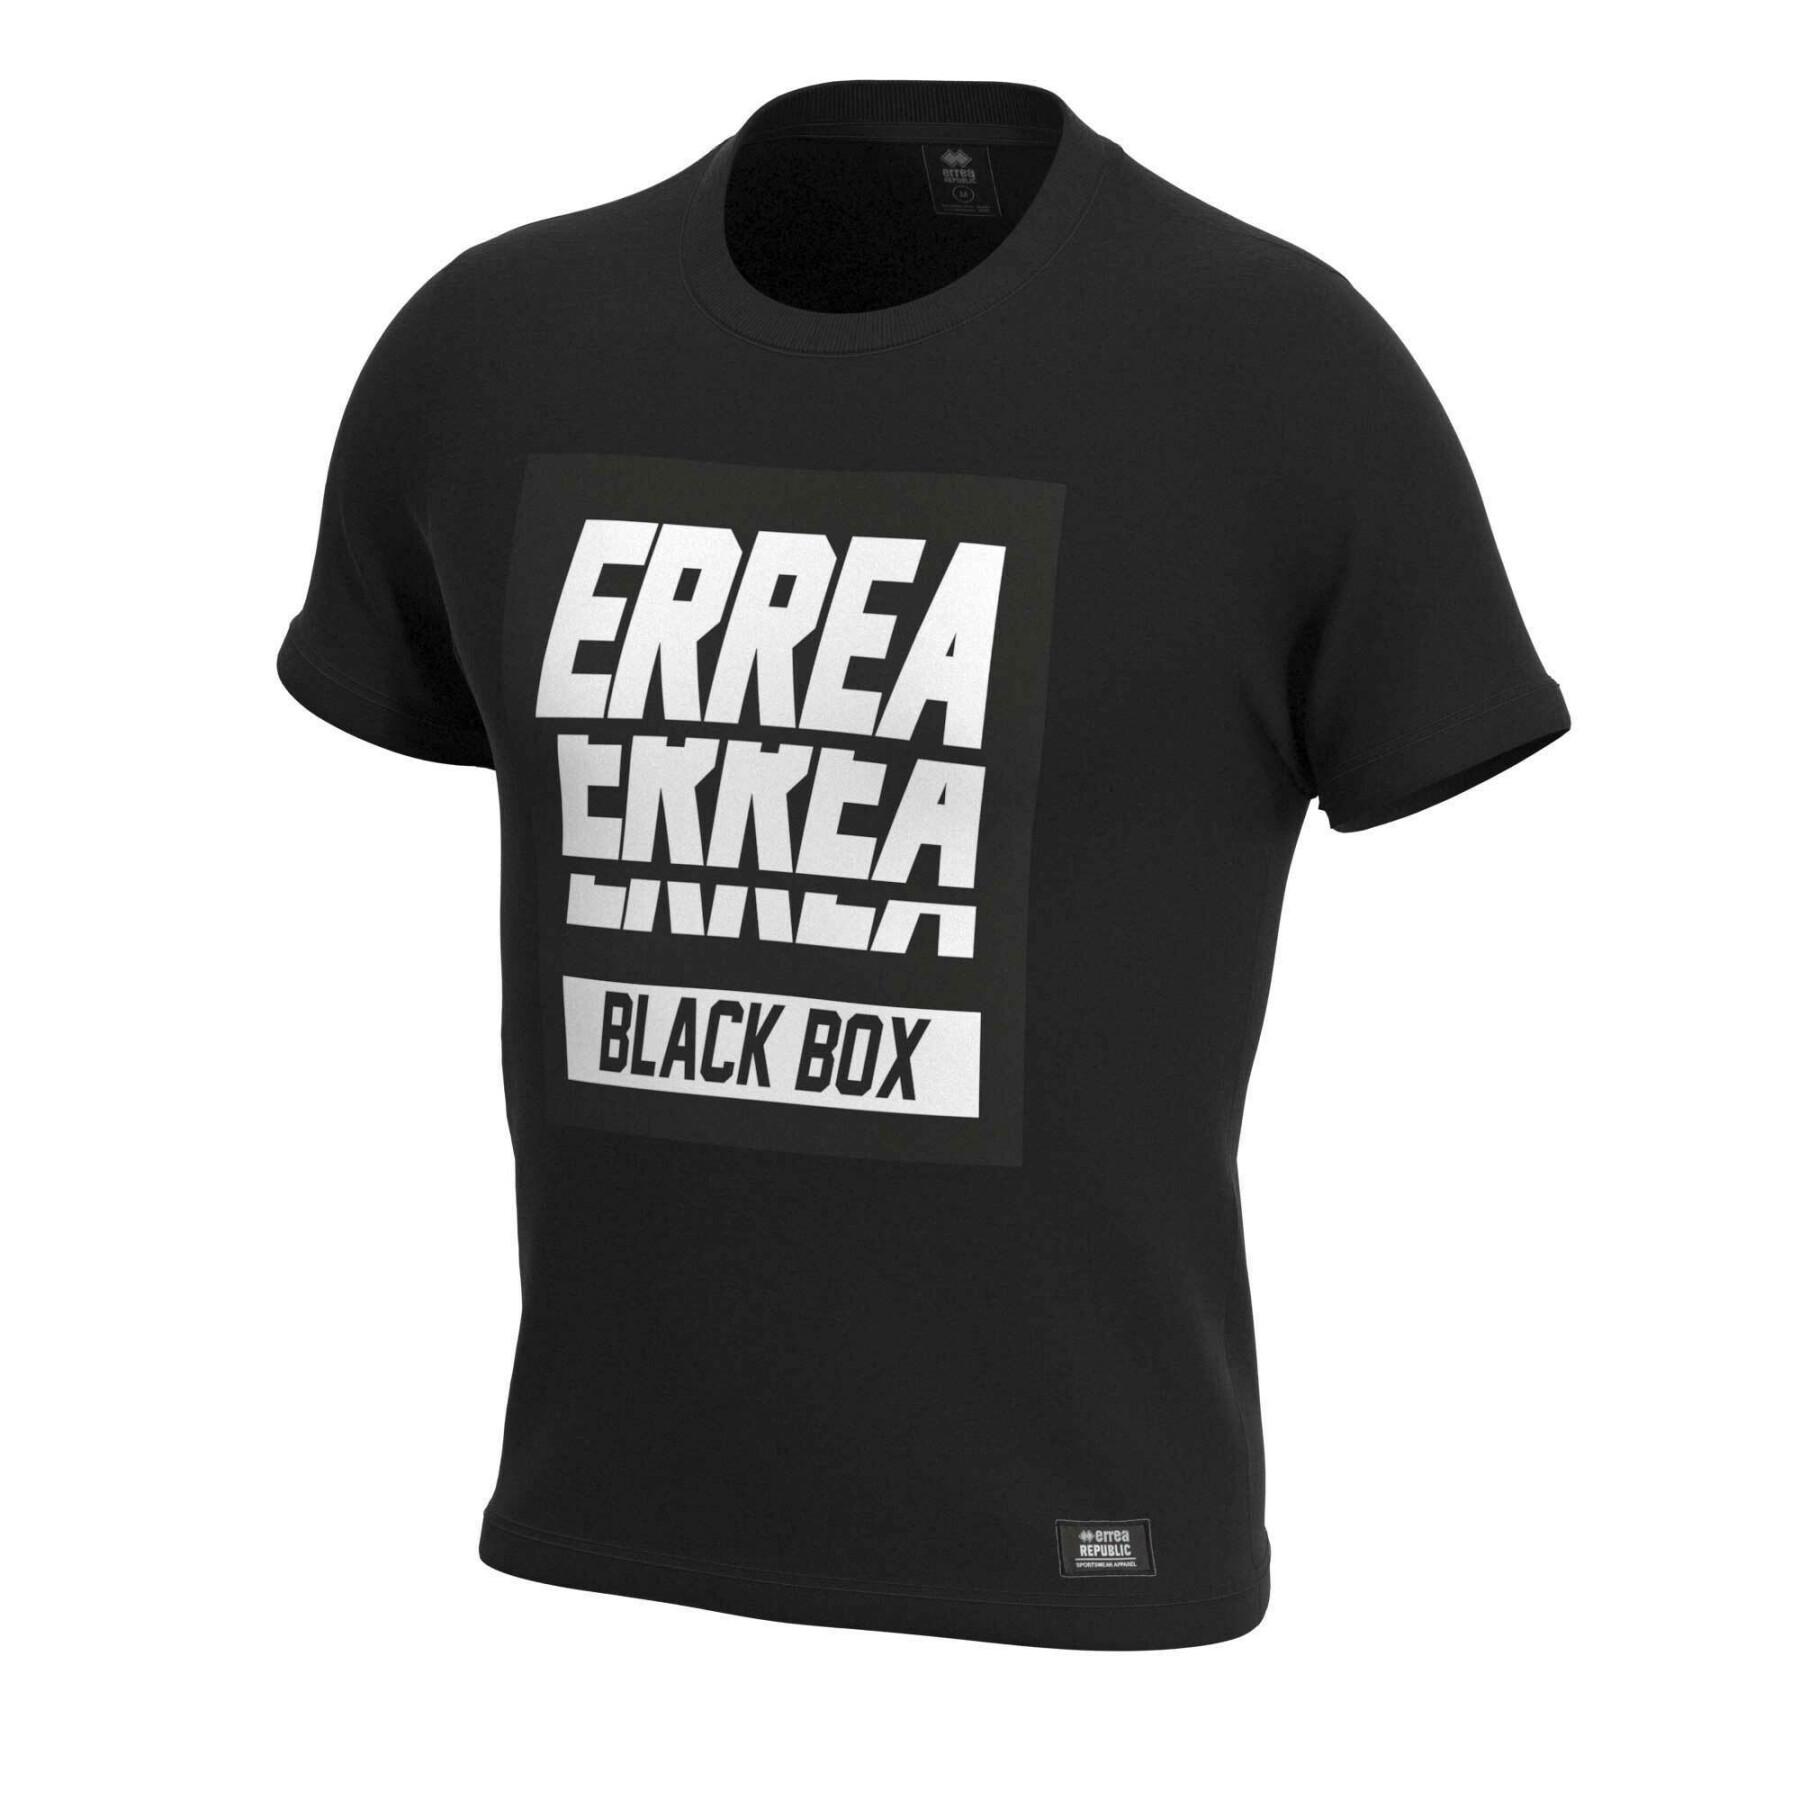 Child's T-shirt Errea Black Box 2022